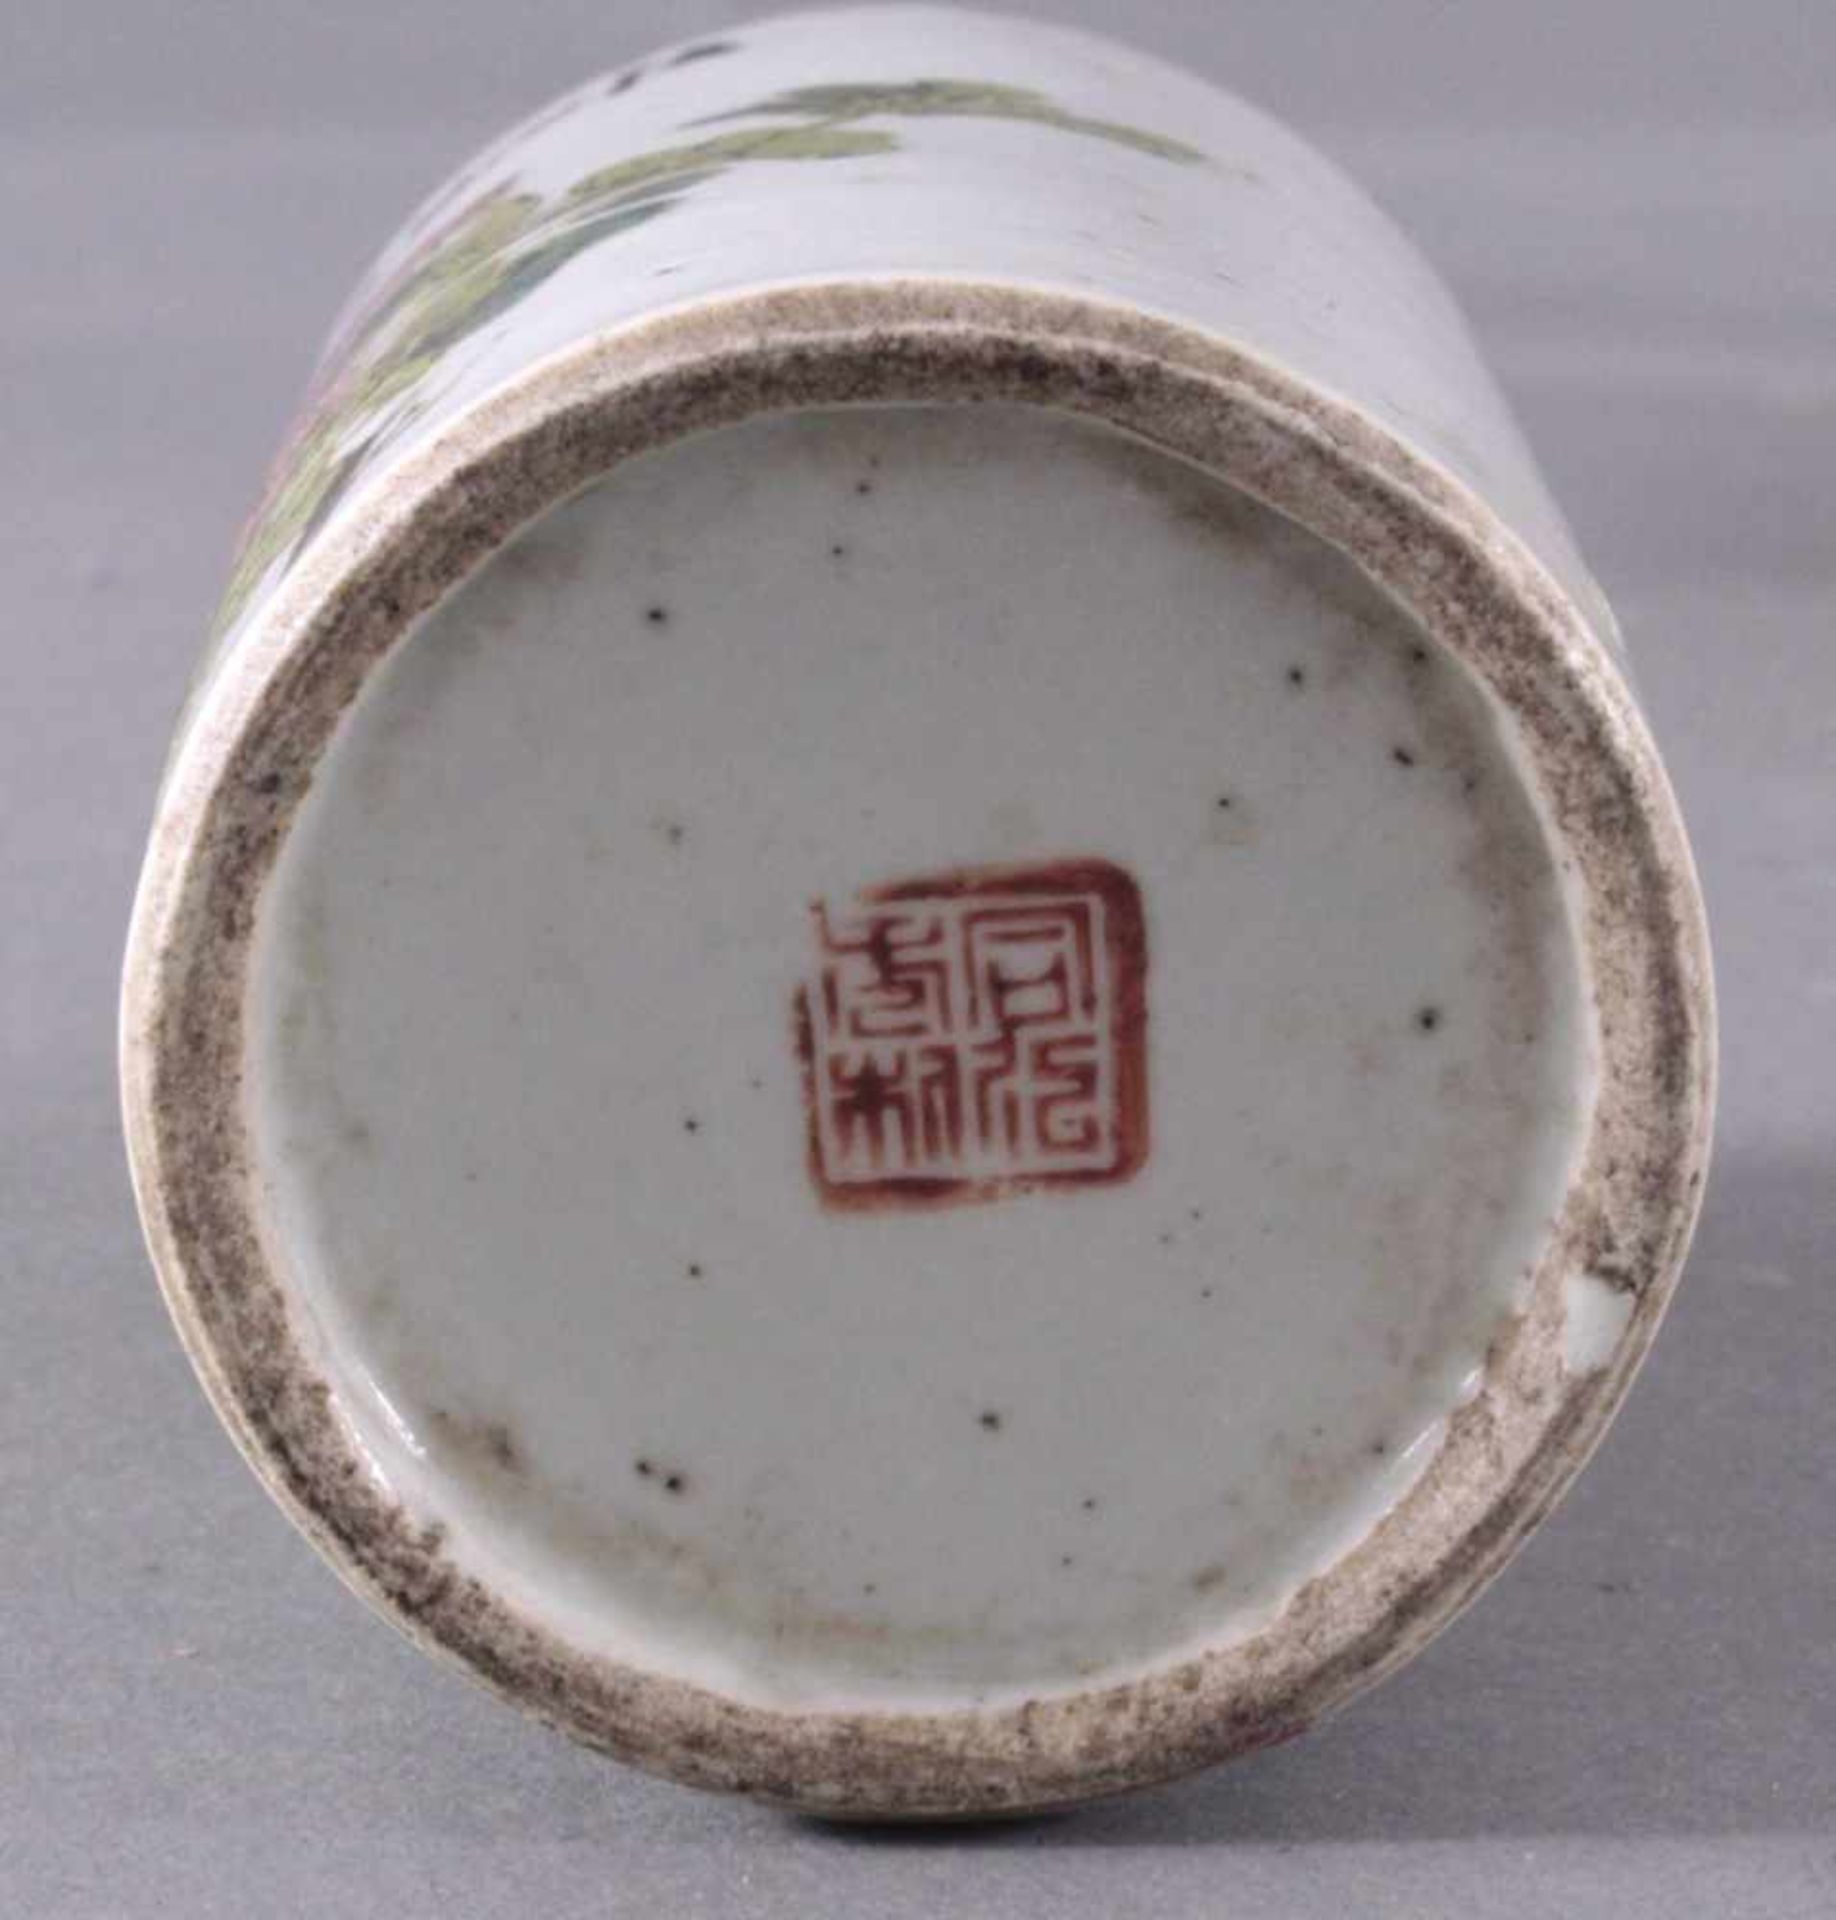 5 asiatische Dekorationsobjekte1 Edelstein-Bäumchen aus Jade Rosenquarz, Amethyst undTigeraugen, - Bild 4 aus 5